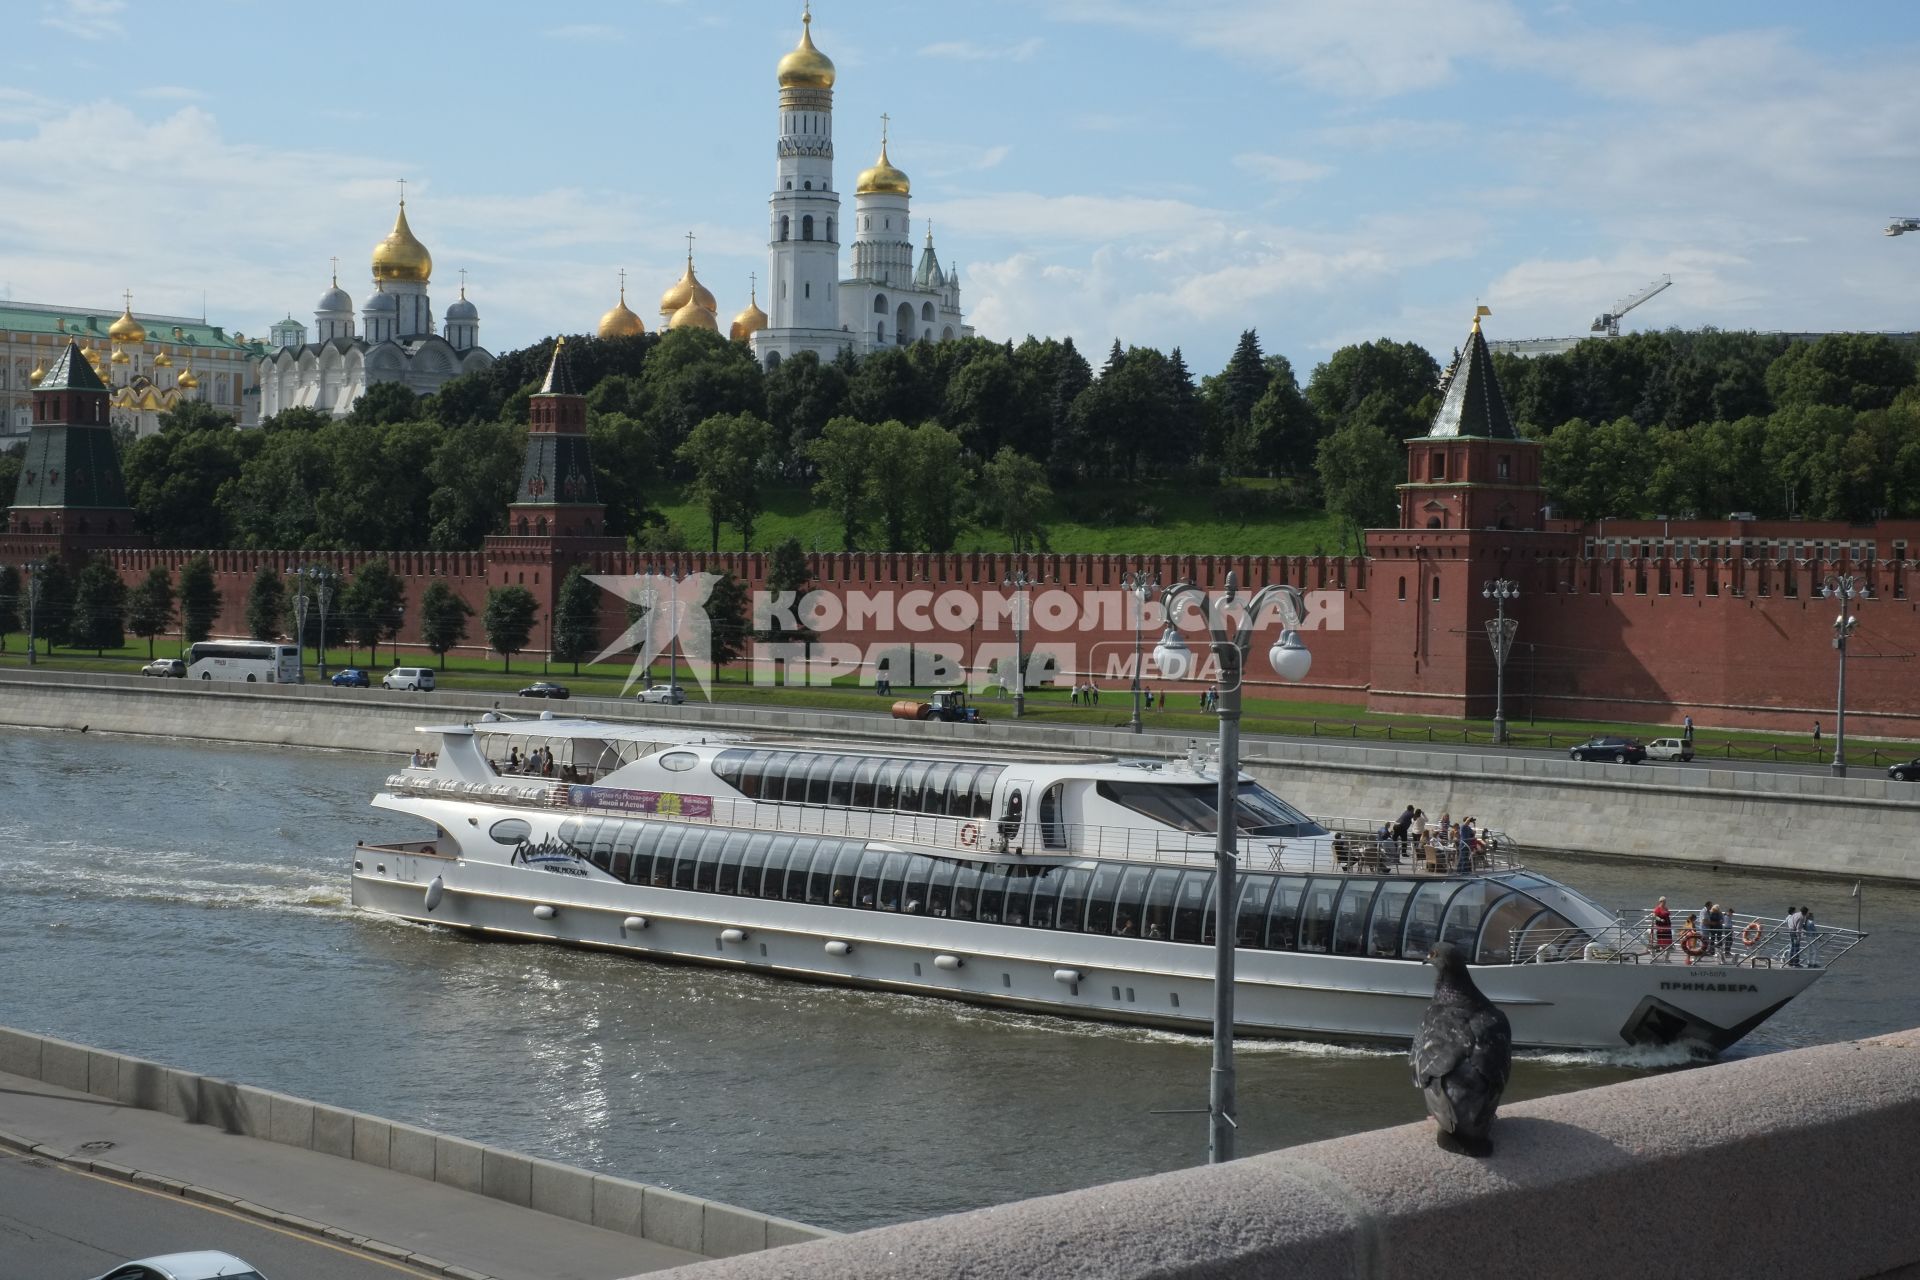 Москва. Яхта-ресторанов Radisson Royal Moscow плывет по Москва-реке мимо Кремлевской набережной.